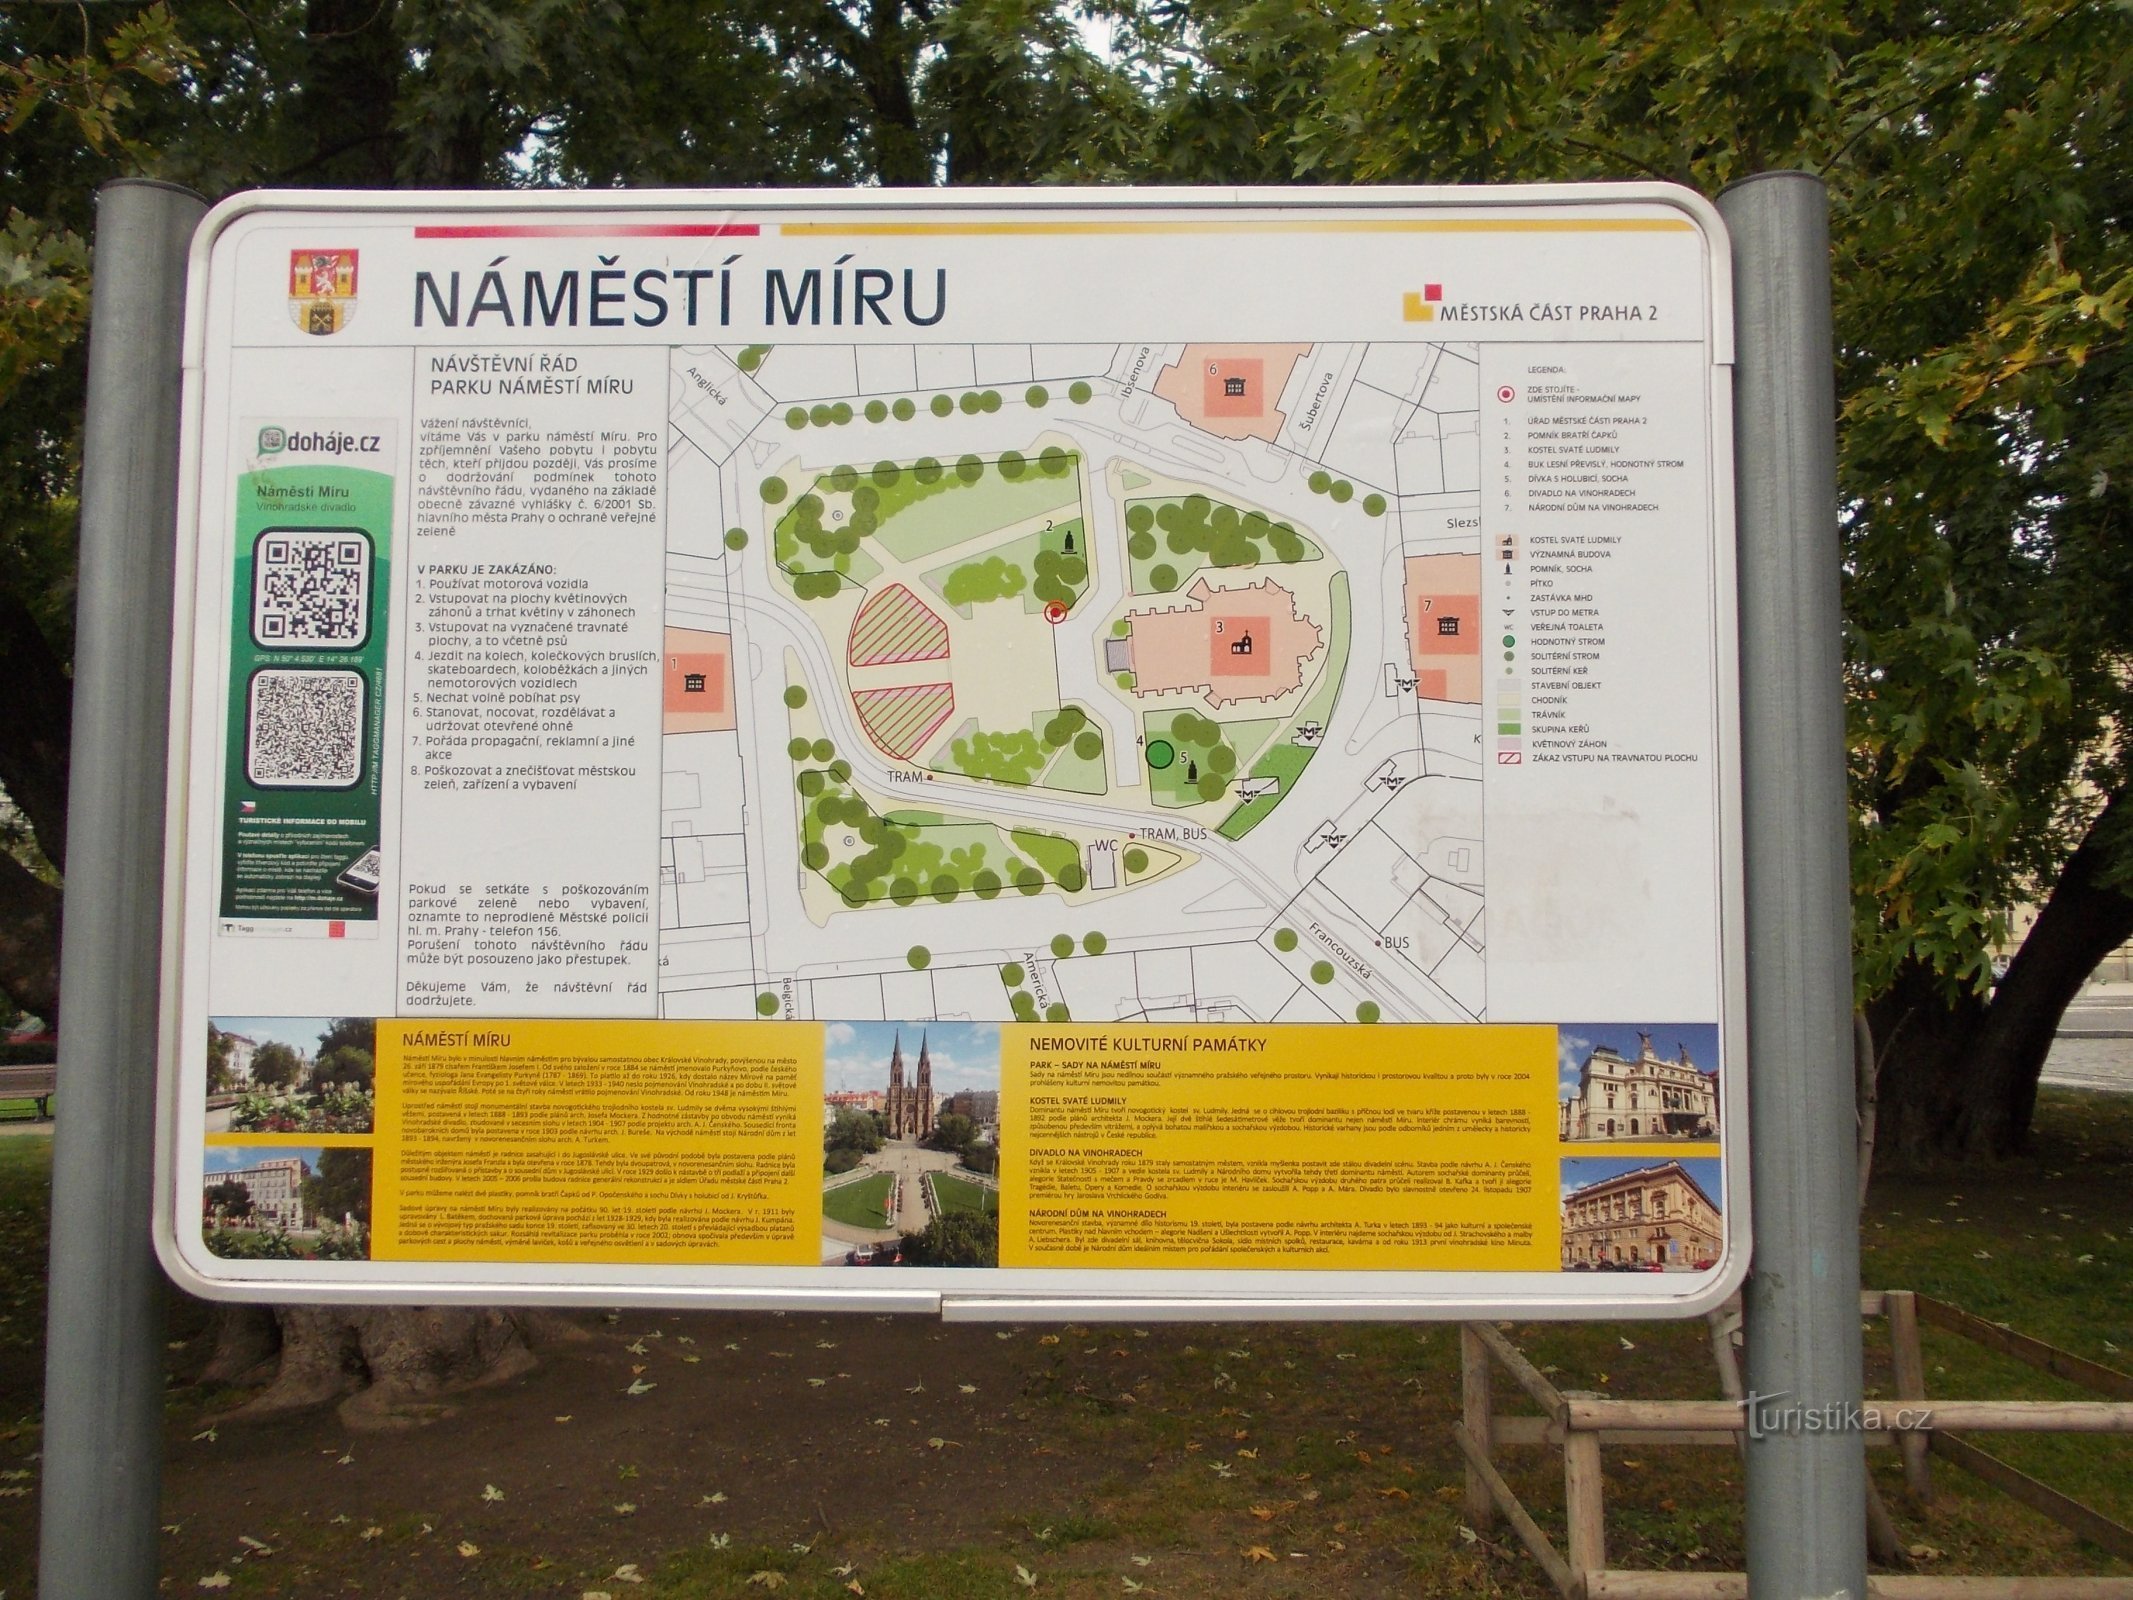 kort over Míru-pladsen